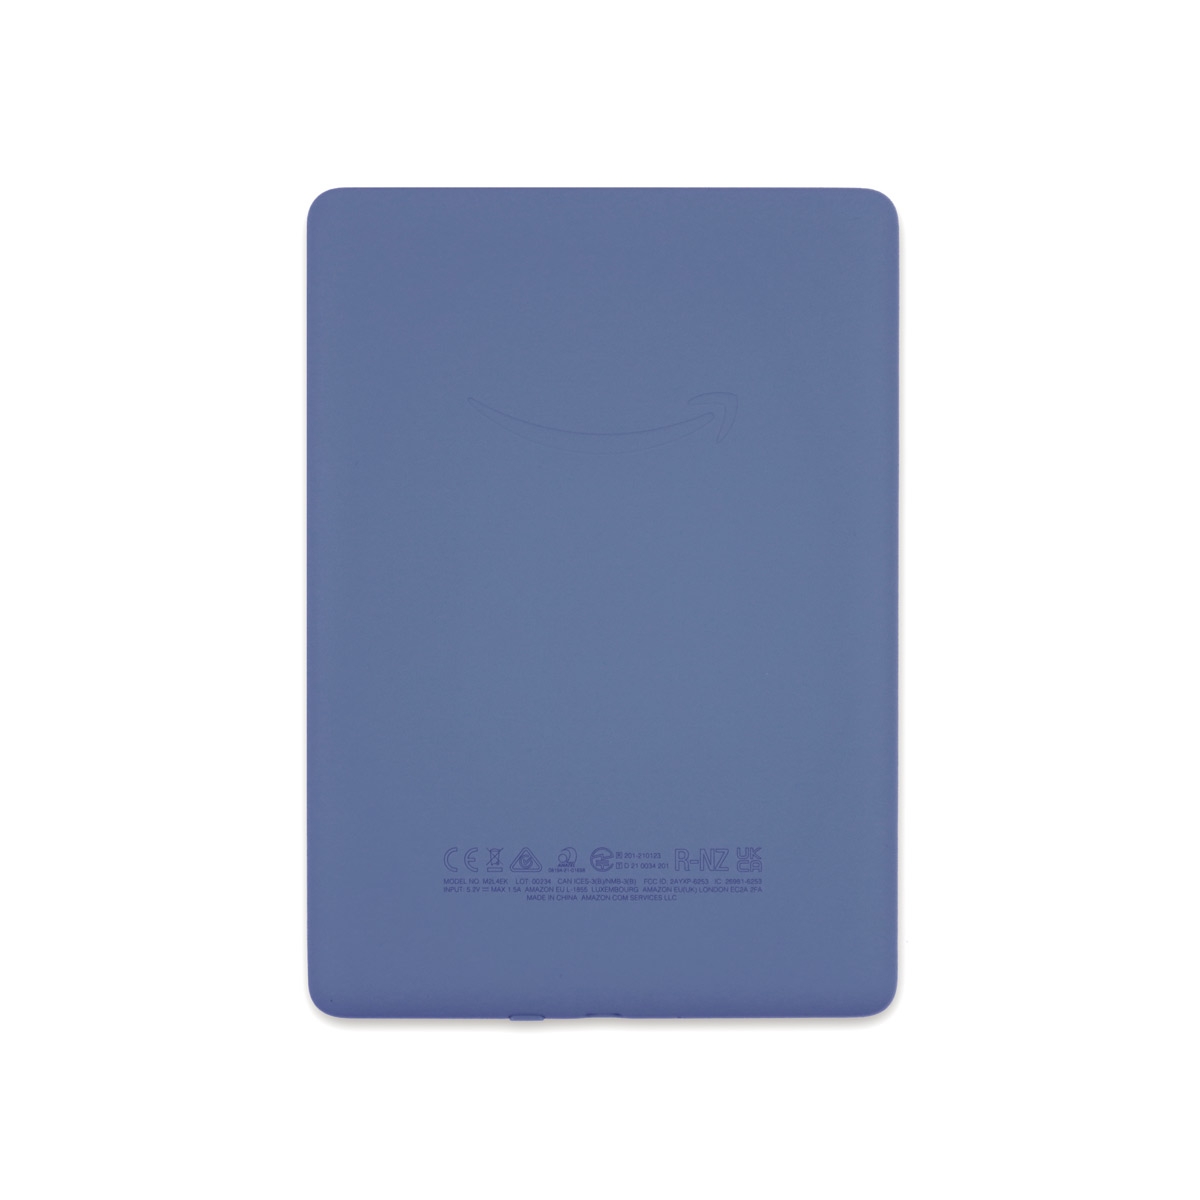 Najnowszy Kindle Paperwhite 5 - 32GB bez reklam Niebieski